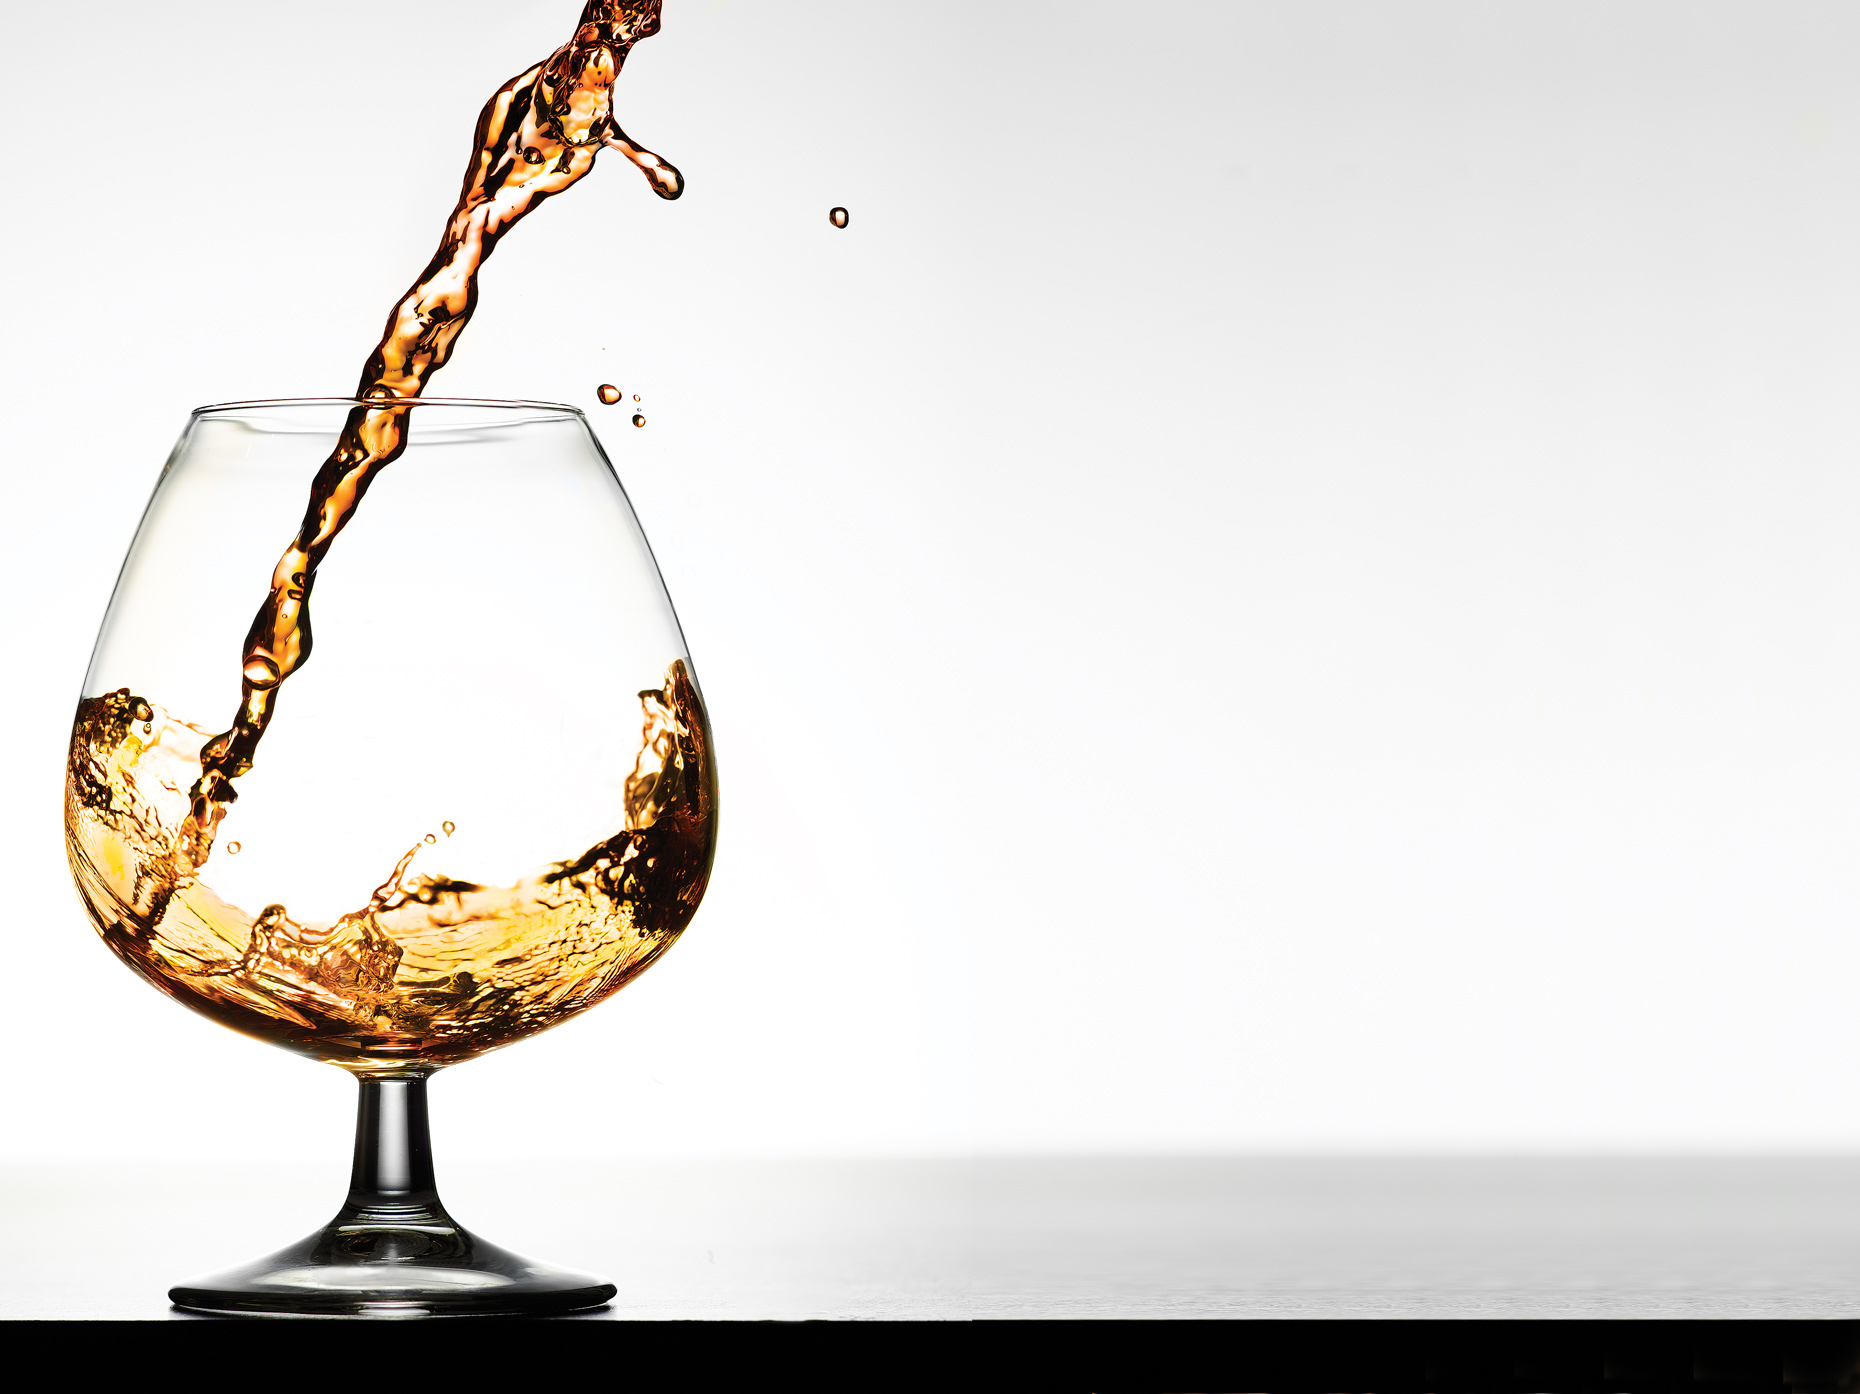 Cognac- Pouring cognac- Henrique Du Tiel